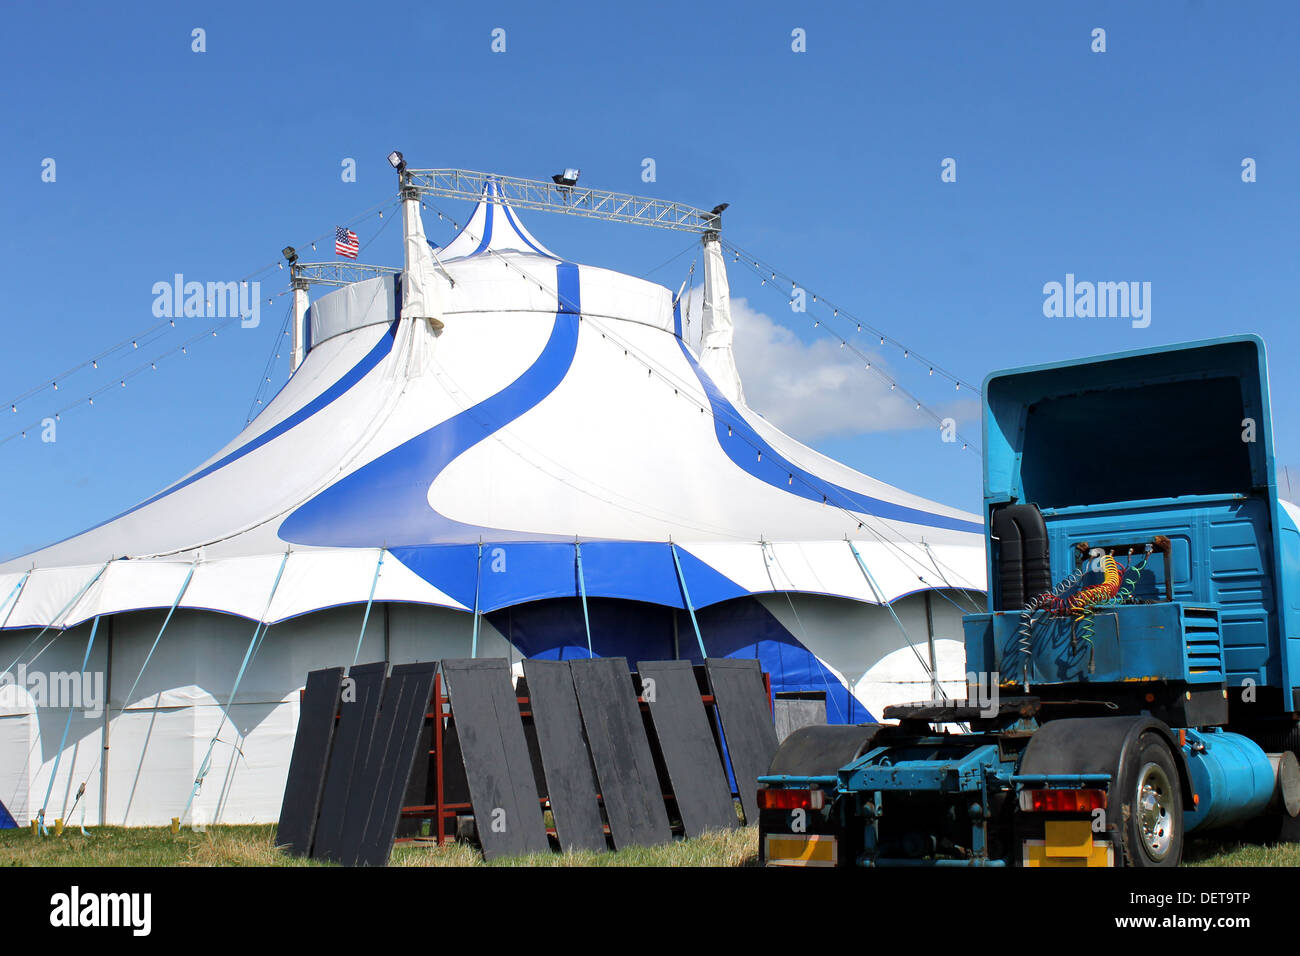 Vista panoramica del Circo americano tenda con carrello in primo piano. Foto Stock